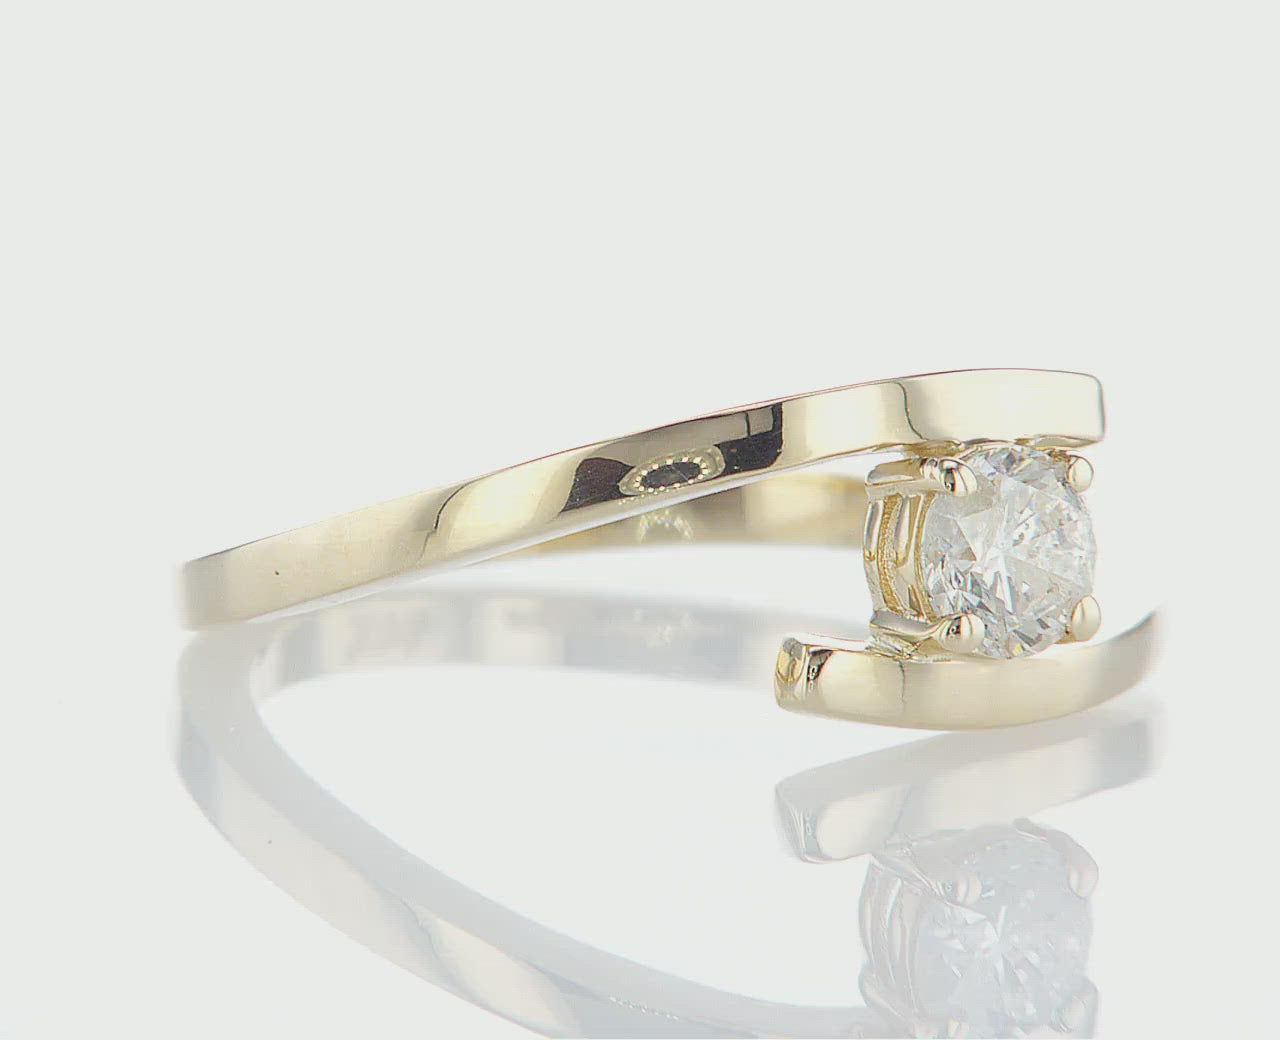 טבעת אירוסין דבש מרשימה, המכילה יהלום טבעי עגול מרכזי במשקל 0.26 קראט. הטבעת הזו מסמלת את השניים שהופכים לאחד, ומשלבת את היוקרה והברק של טבעת יהלומים עם האלגנטיות הנצחית, ומציעה יופי ואופנה שמתאימים לאירוע של פעם בחיים.